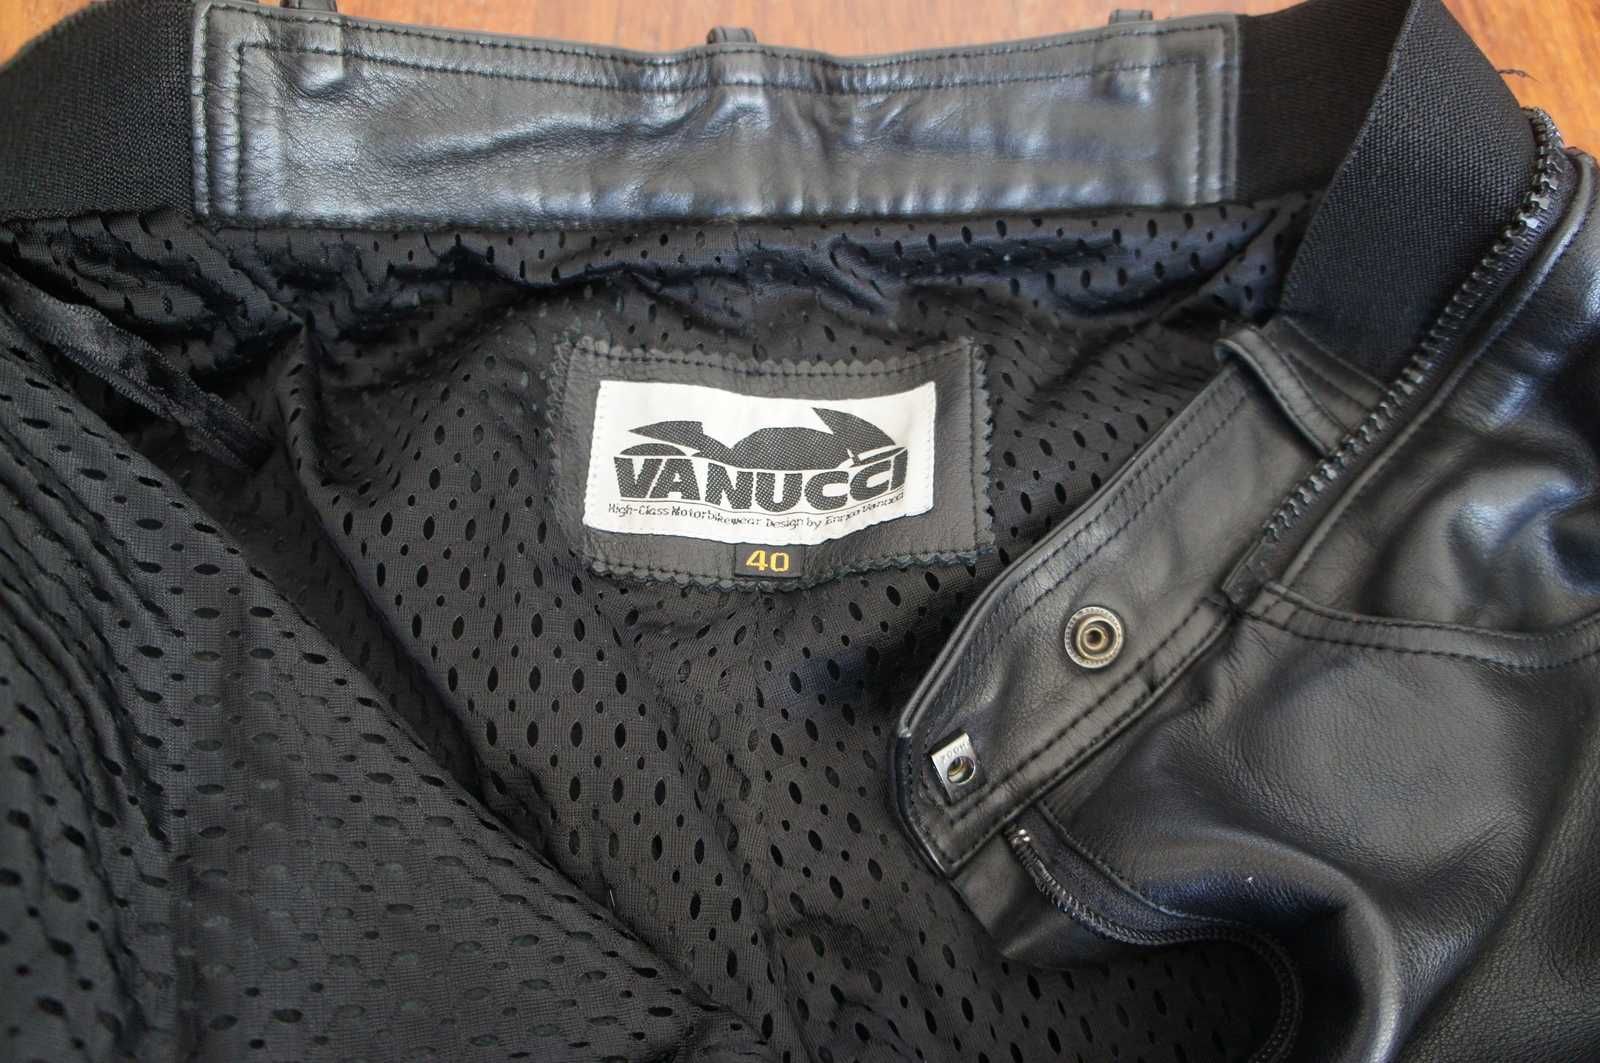 Spodnie skórzane Vanucci damskie roz 40 chopper